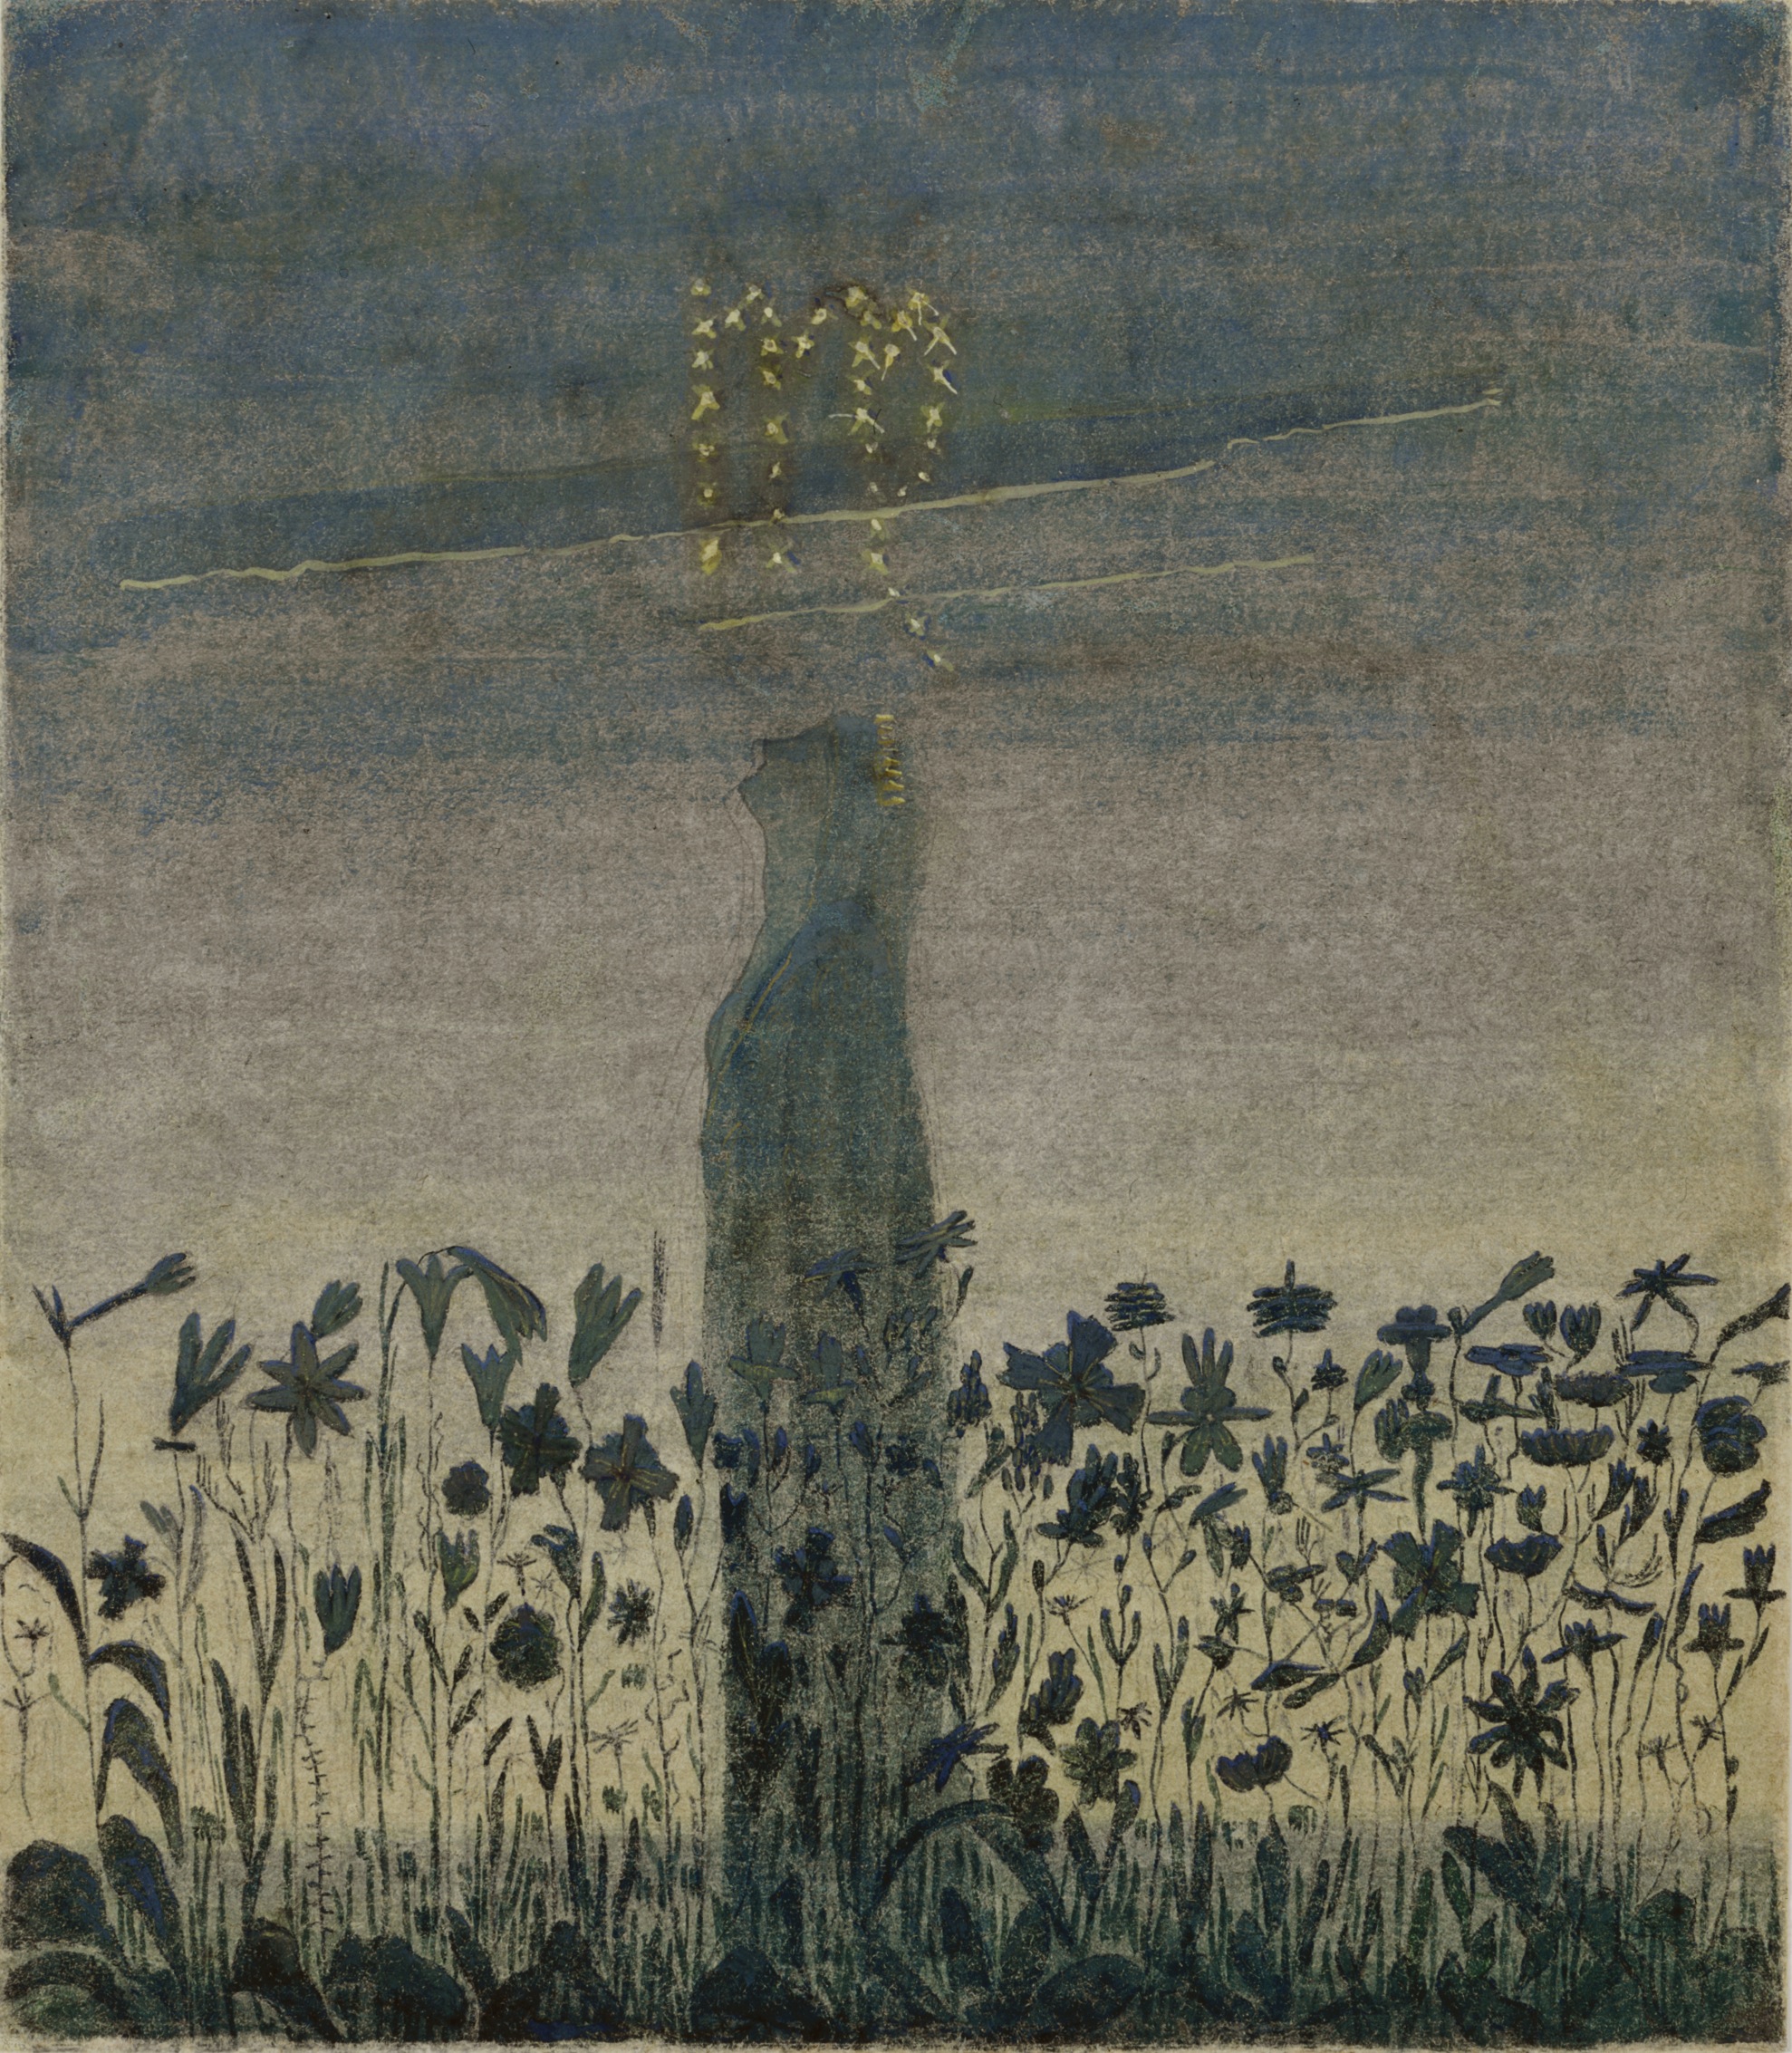 Le soleil passe dans le signe de la Vierge by Mikalojus Konstantinas Čiurlionis - 1906 - 35.6 x 31.3 cm 